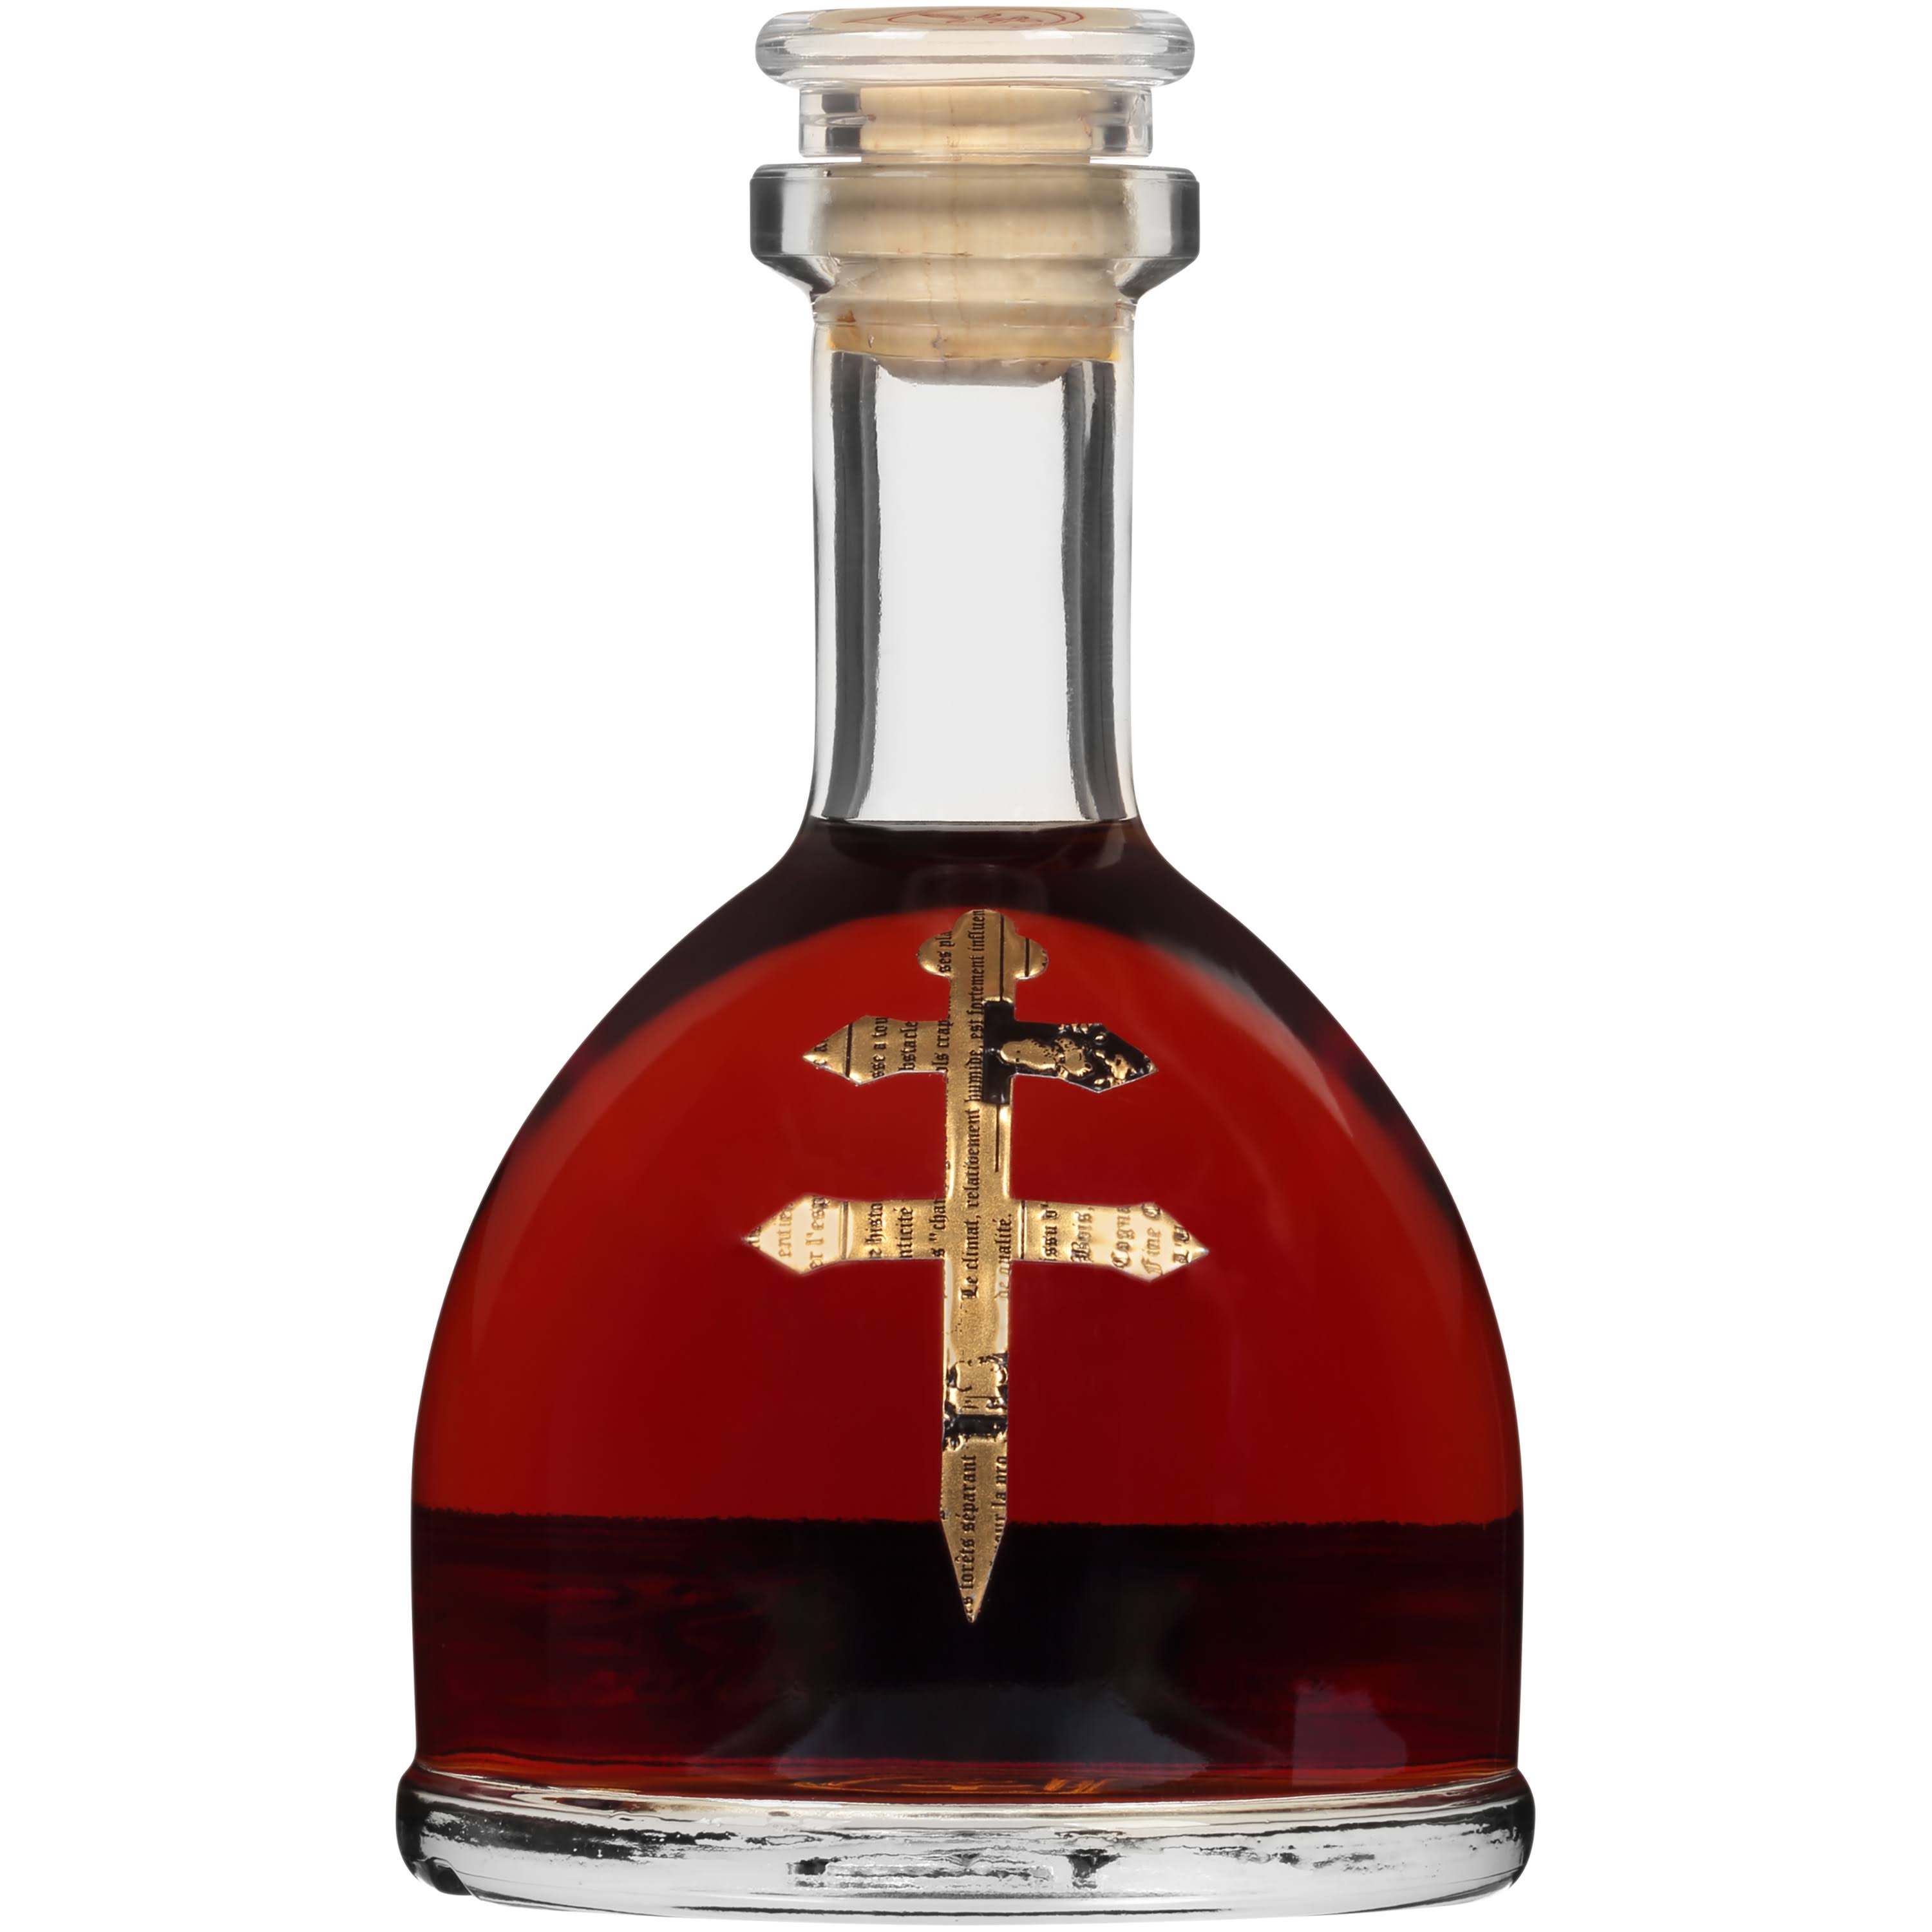 D'usse Cognac Vsop - 375 ml bottle